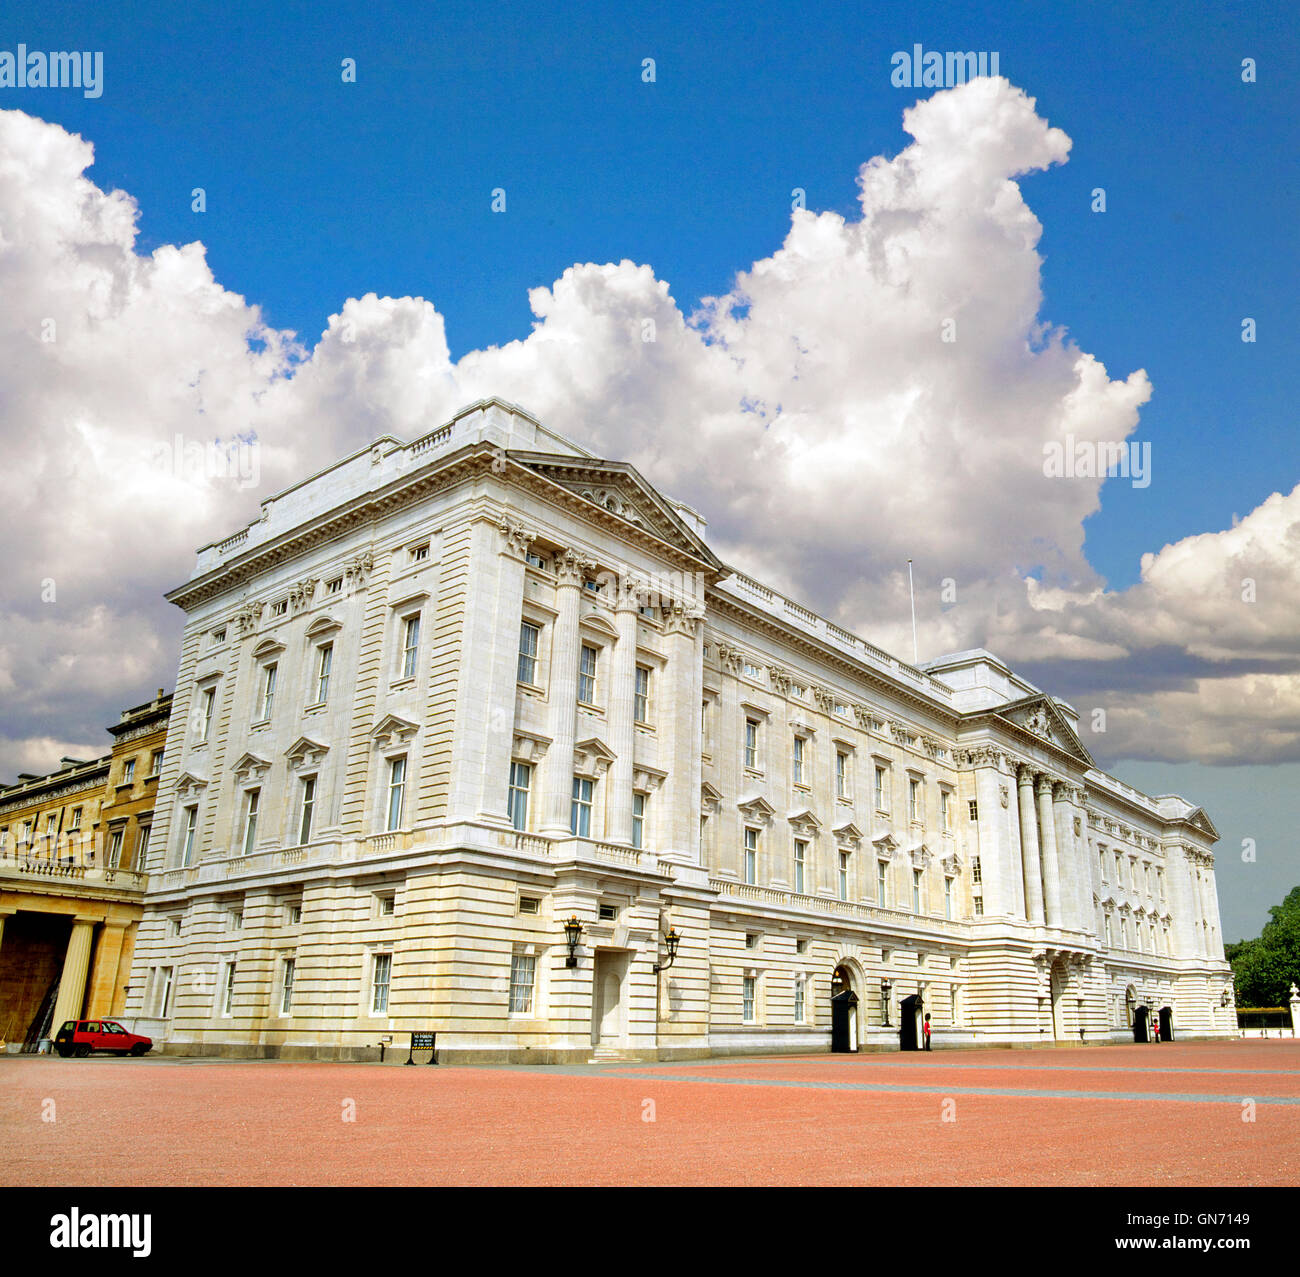 Vorderansicht des Buckingham Palace, Heimat der königlichen Familie und der Königin von England, Queen Elizabeth II., in London, England. Stockfoto